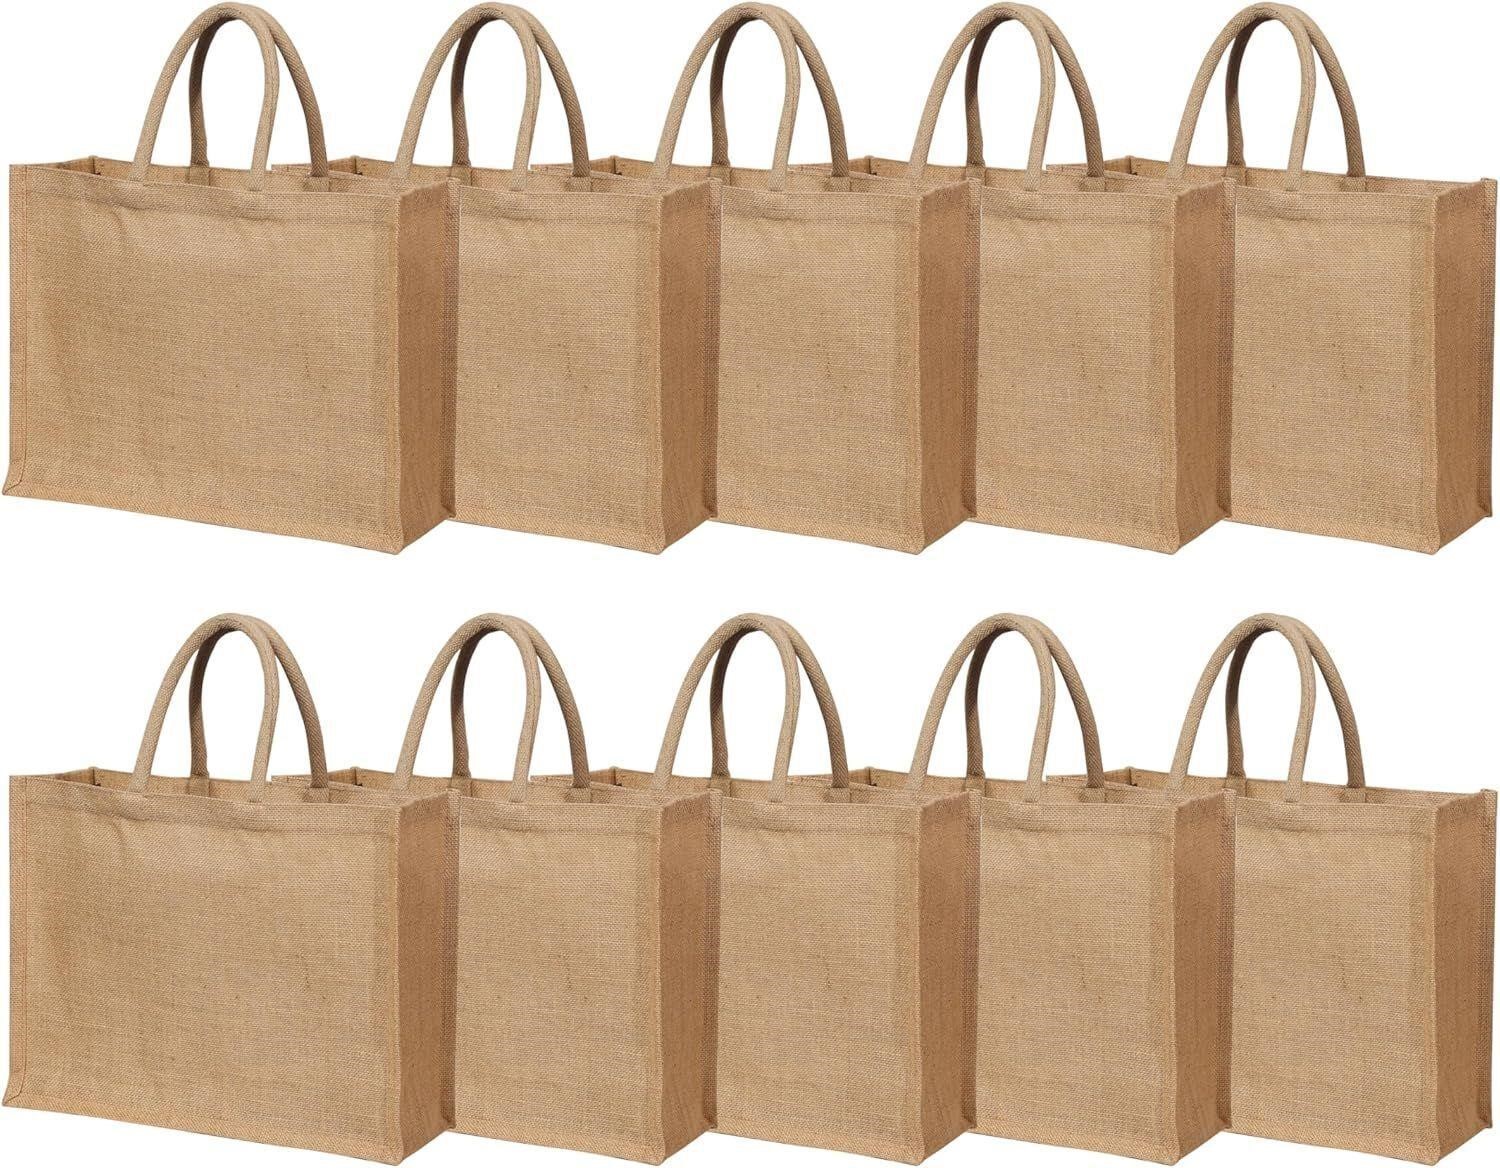 Jute Burlap Tote Bags with Handle